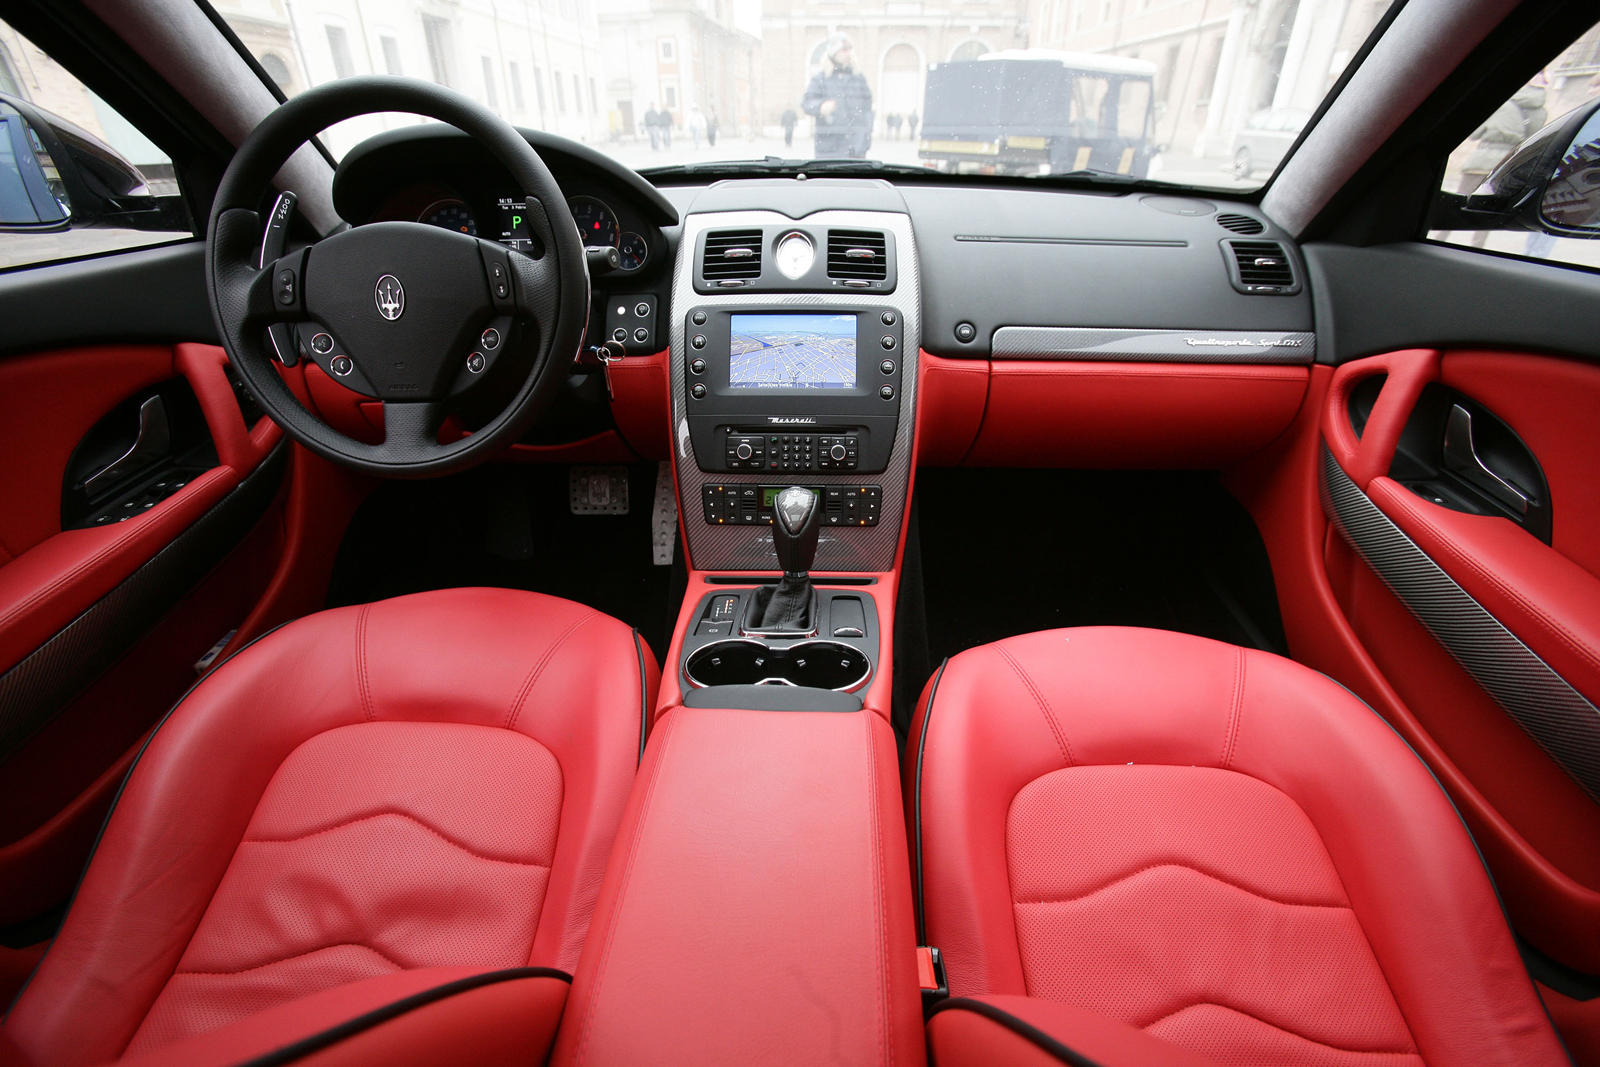 2008 Maserati Quattroporte Dashboard